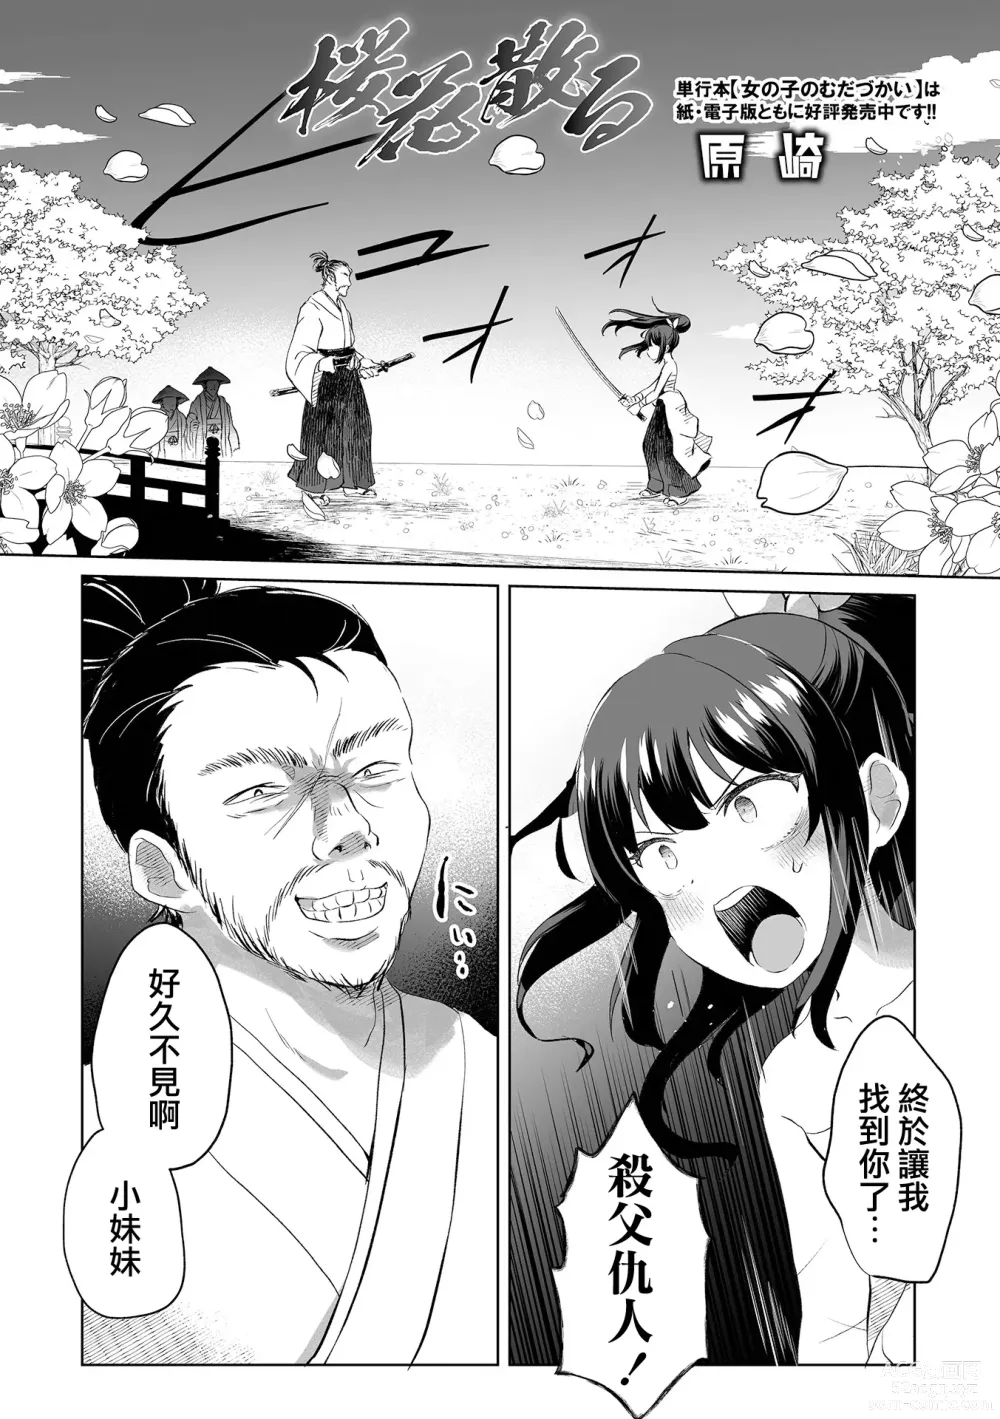 Page 2 of manga Ouka Chiru